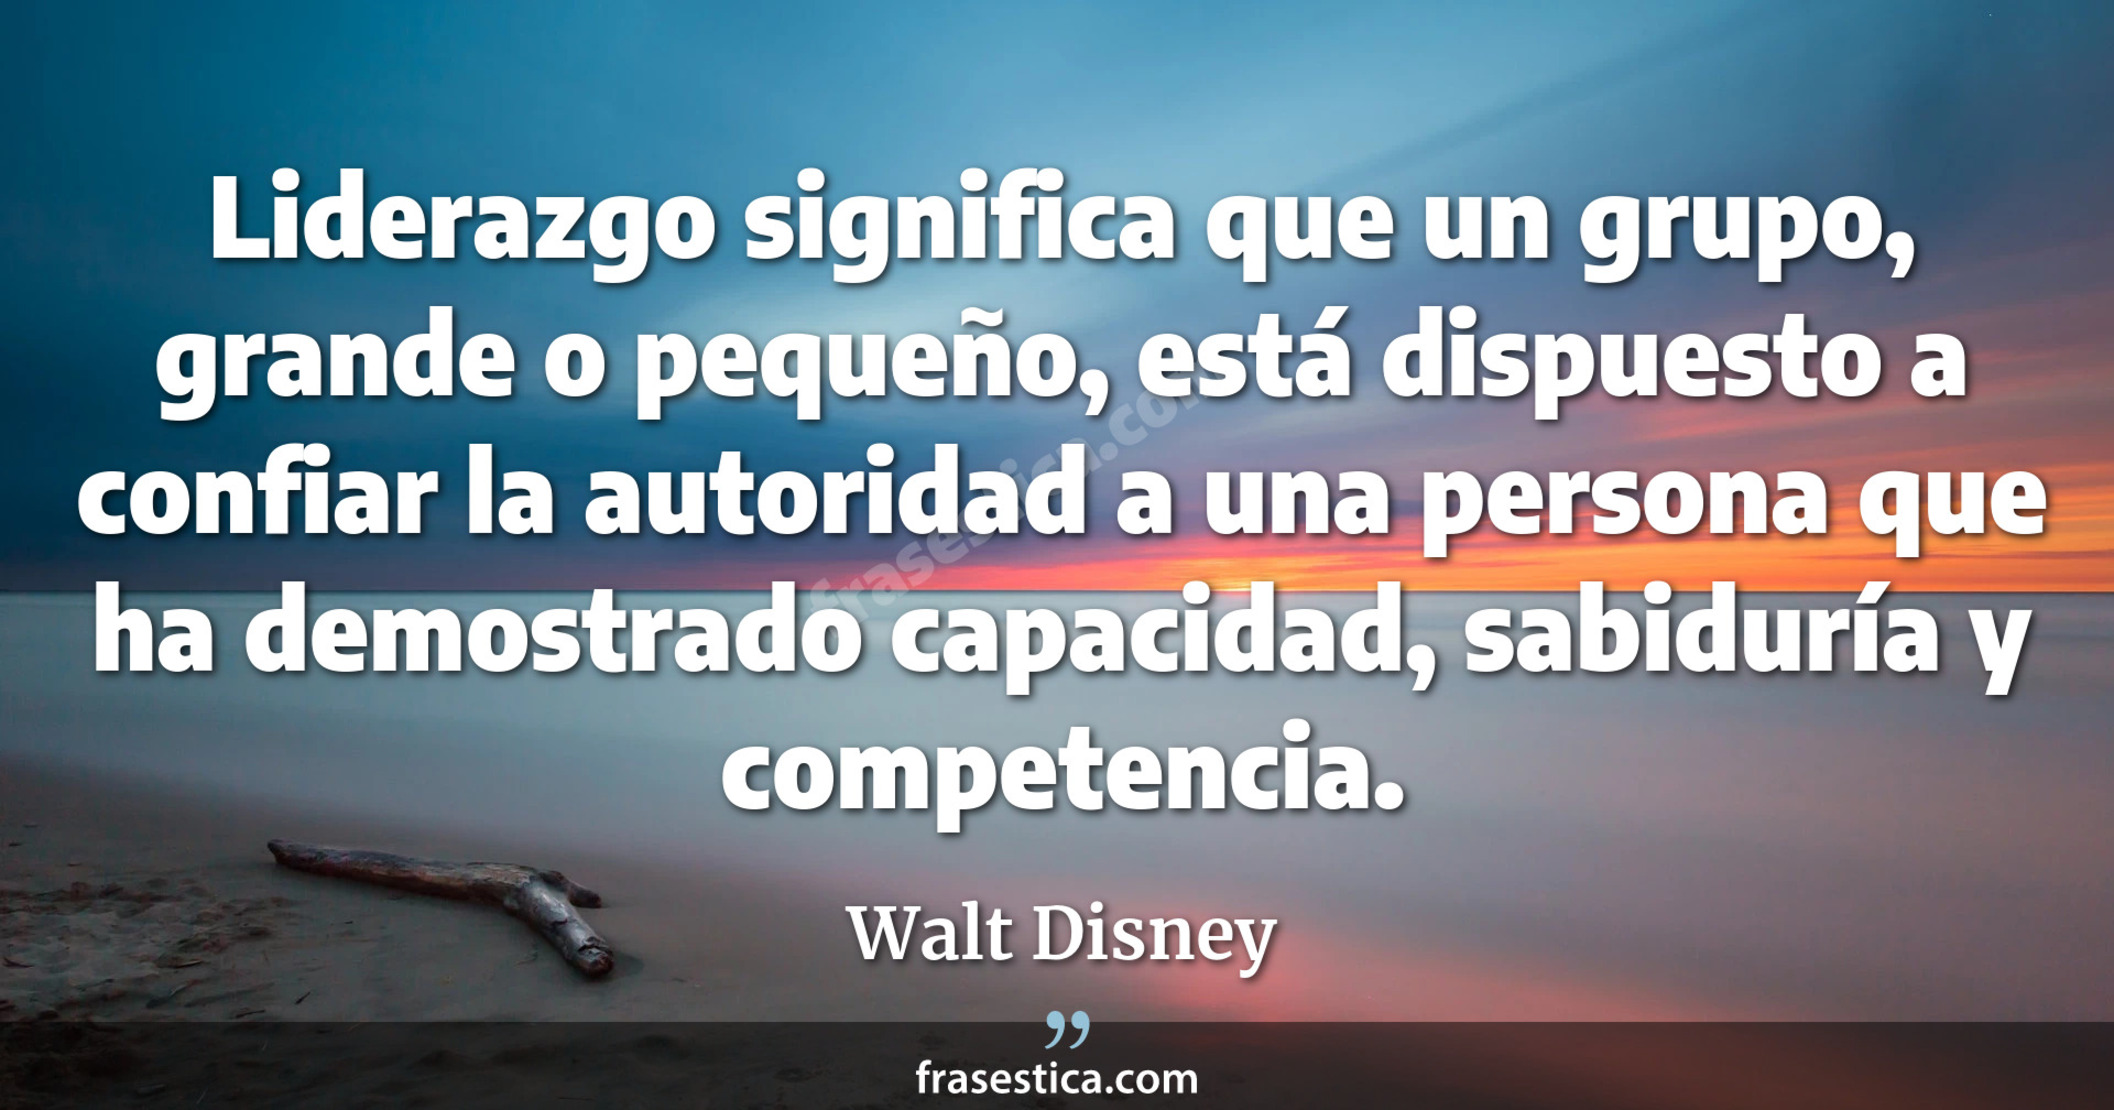 Liderazgo significa que un grupo, grande o pequeño, está dispuesto a confiar la autoridad a una persona que ha demostrado capacidad, sabiduría y competencia. - Walt Disney